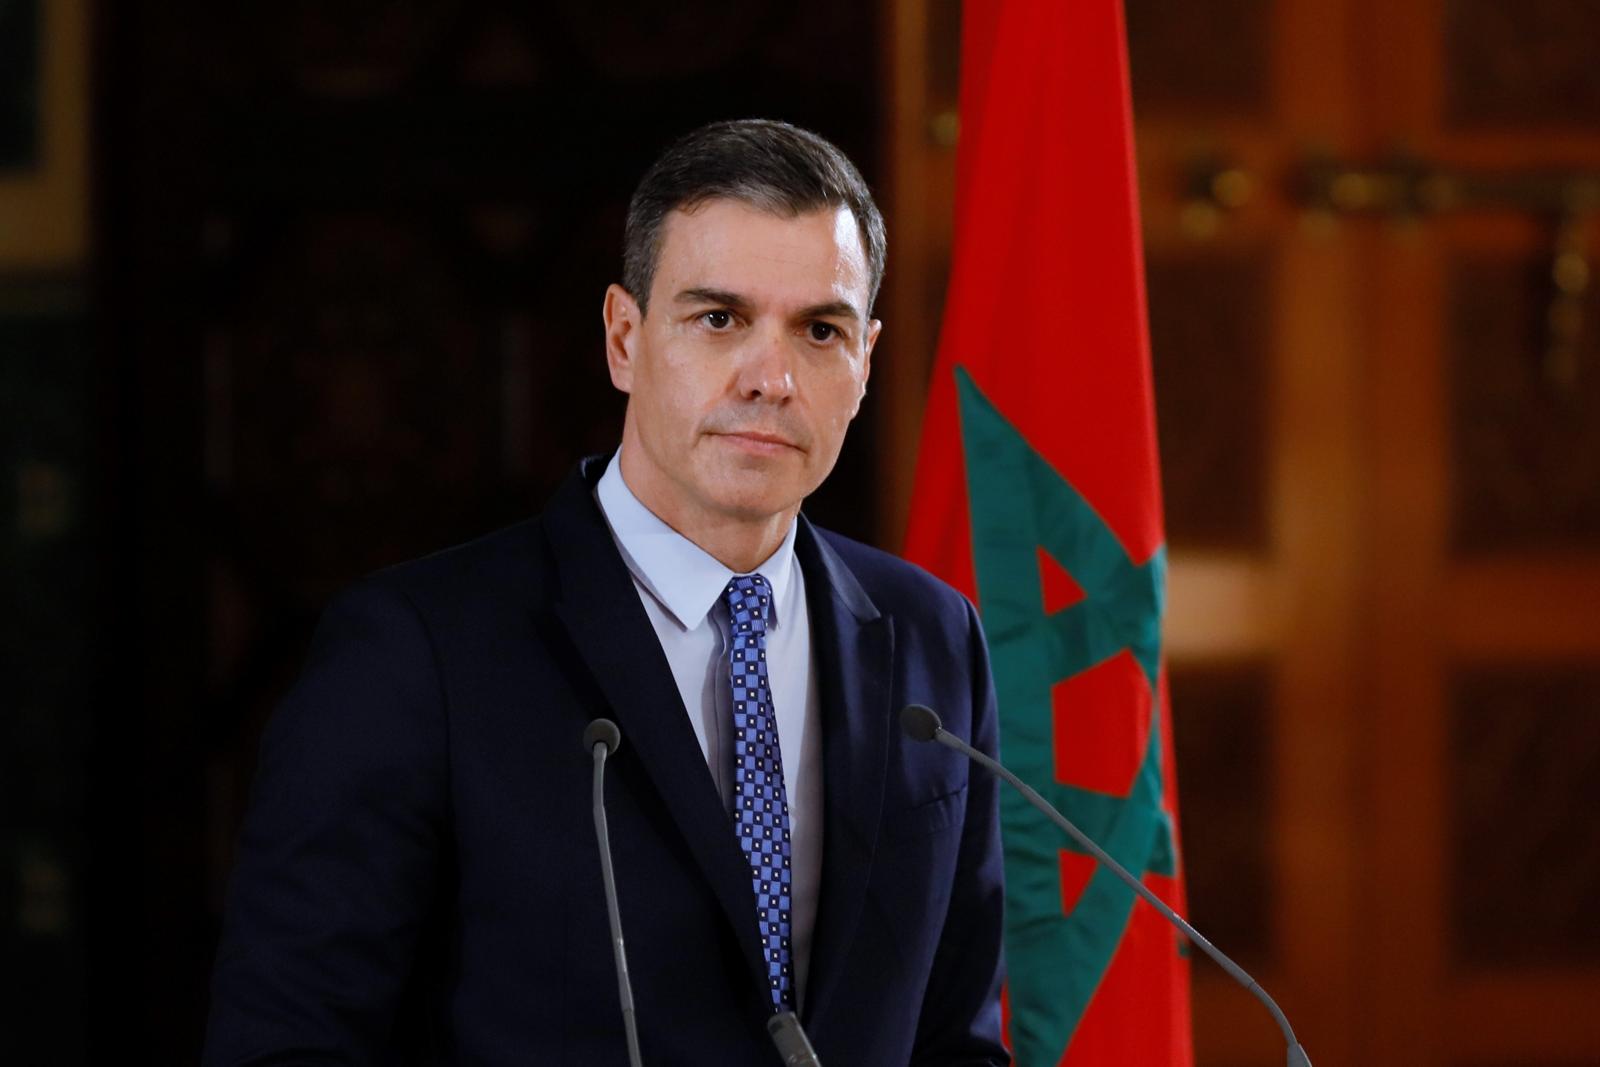 Pedro Sanchez plaide pour le soutien du Maroc, qui souffre des conséquences de l'immigration illégale